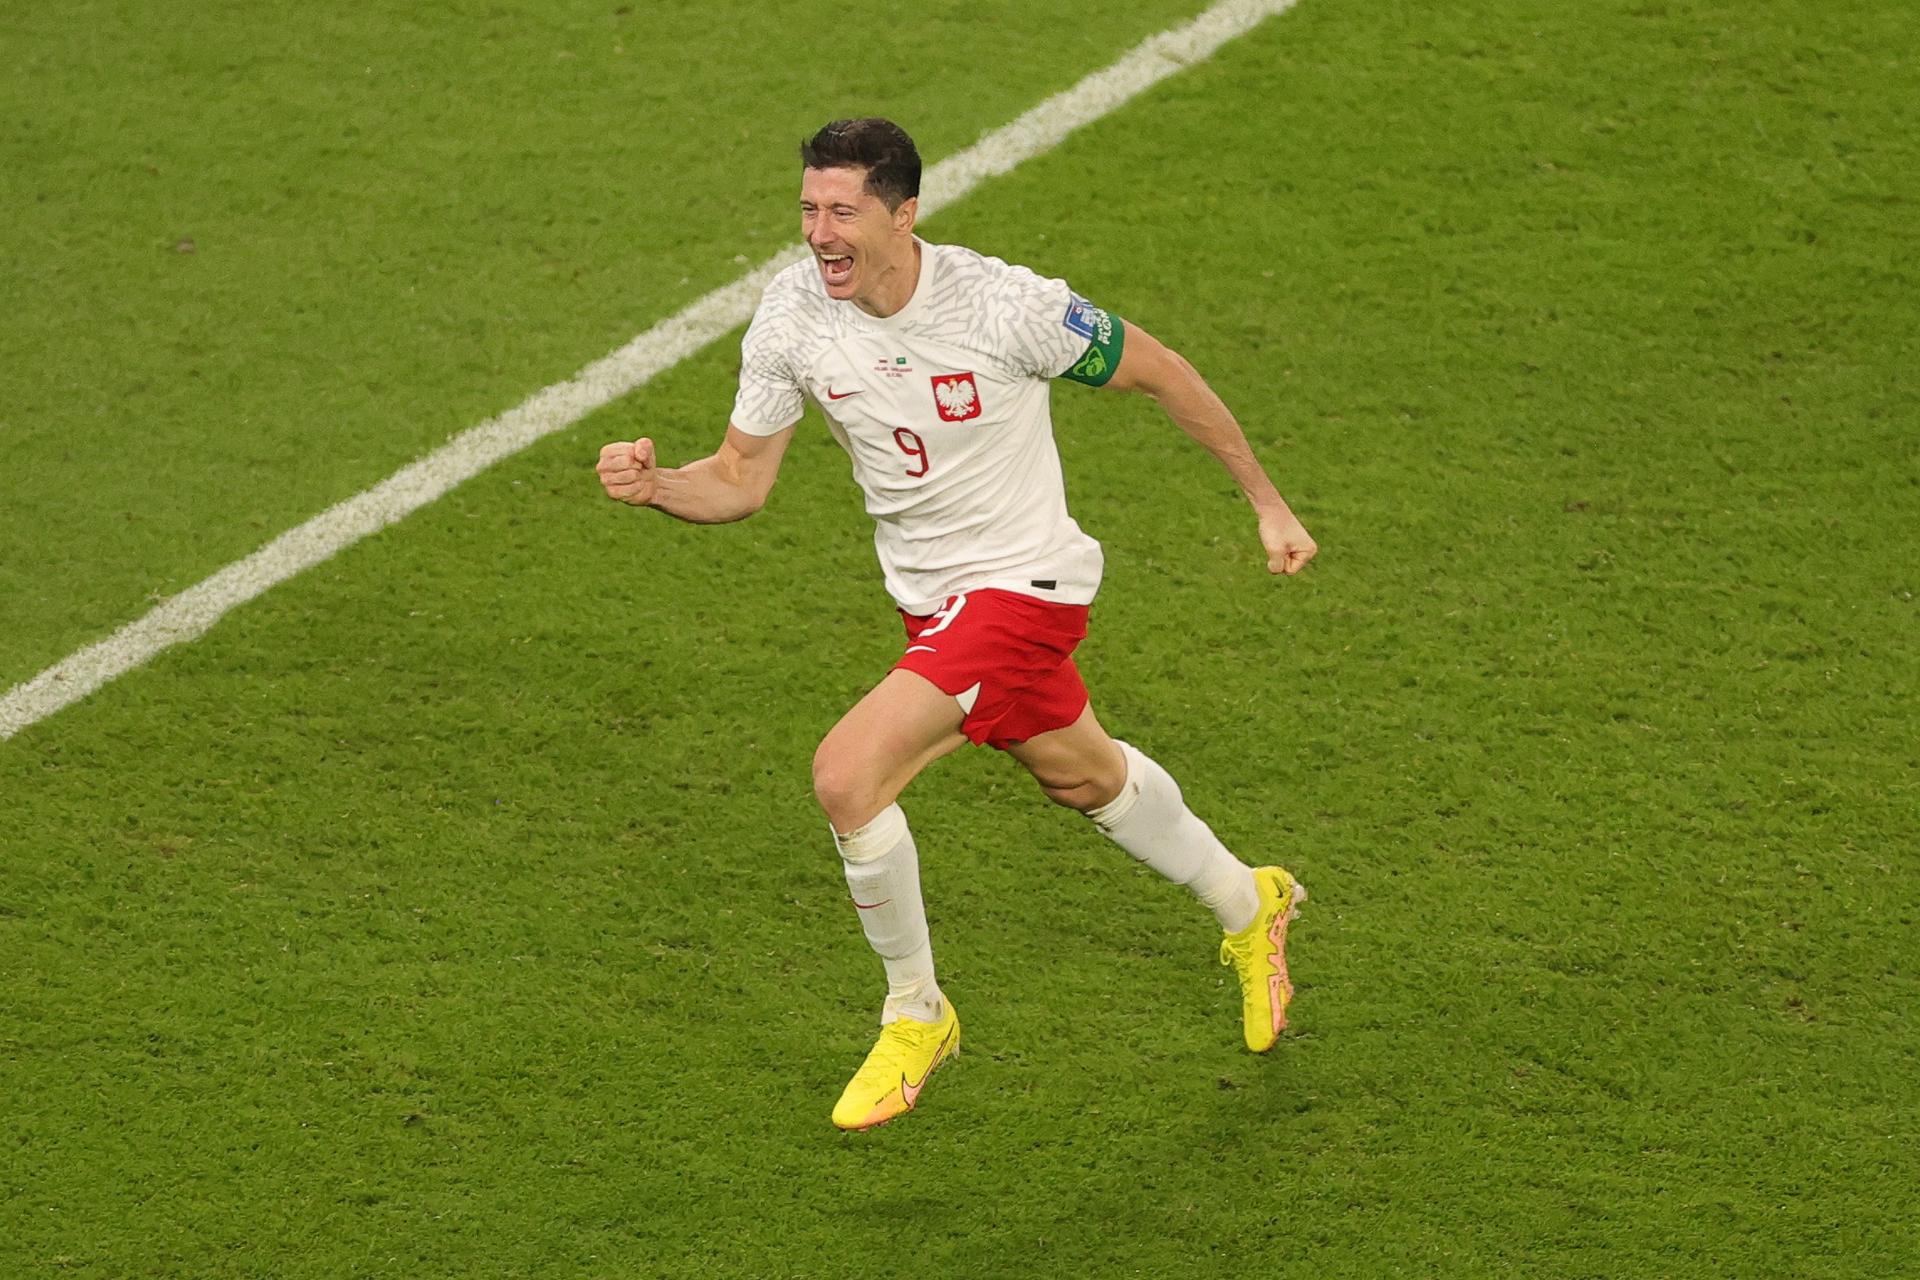 Polônia vence e "Lewa" se reencontra com o gol!